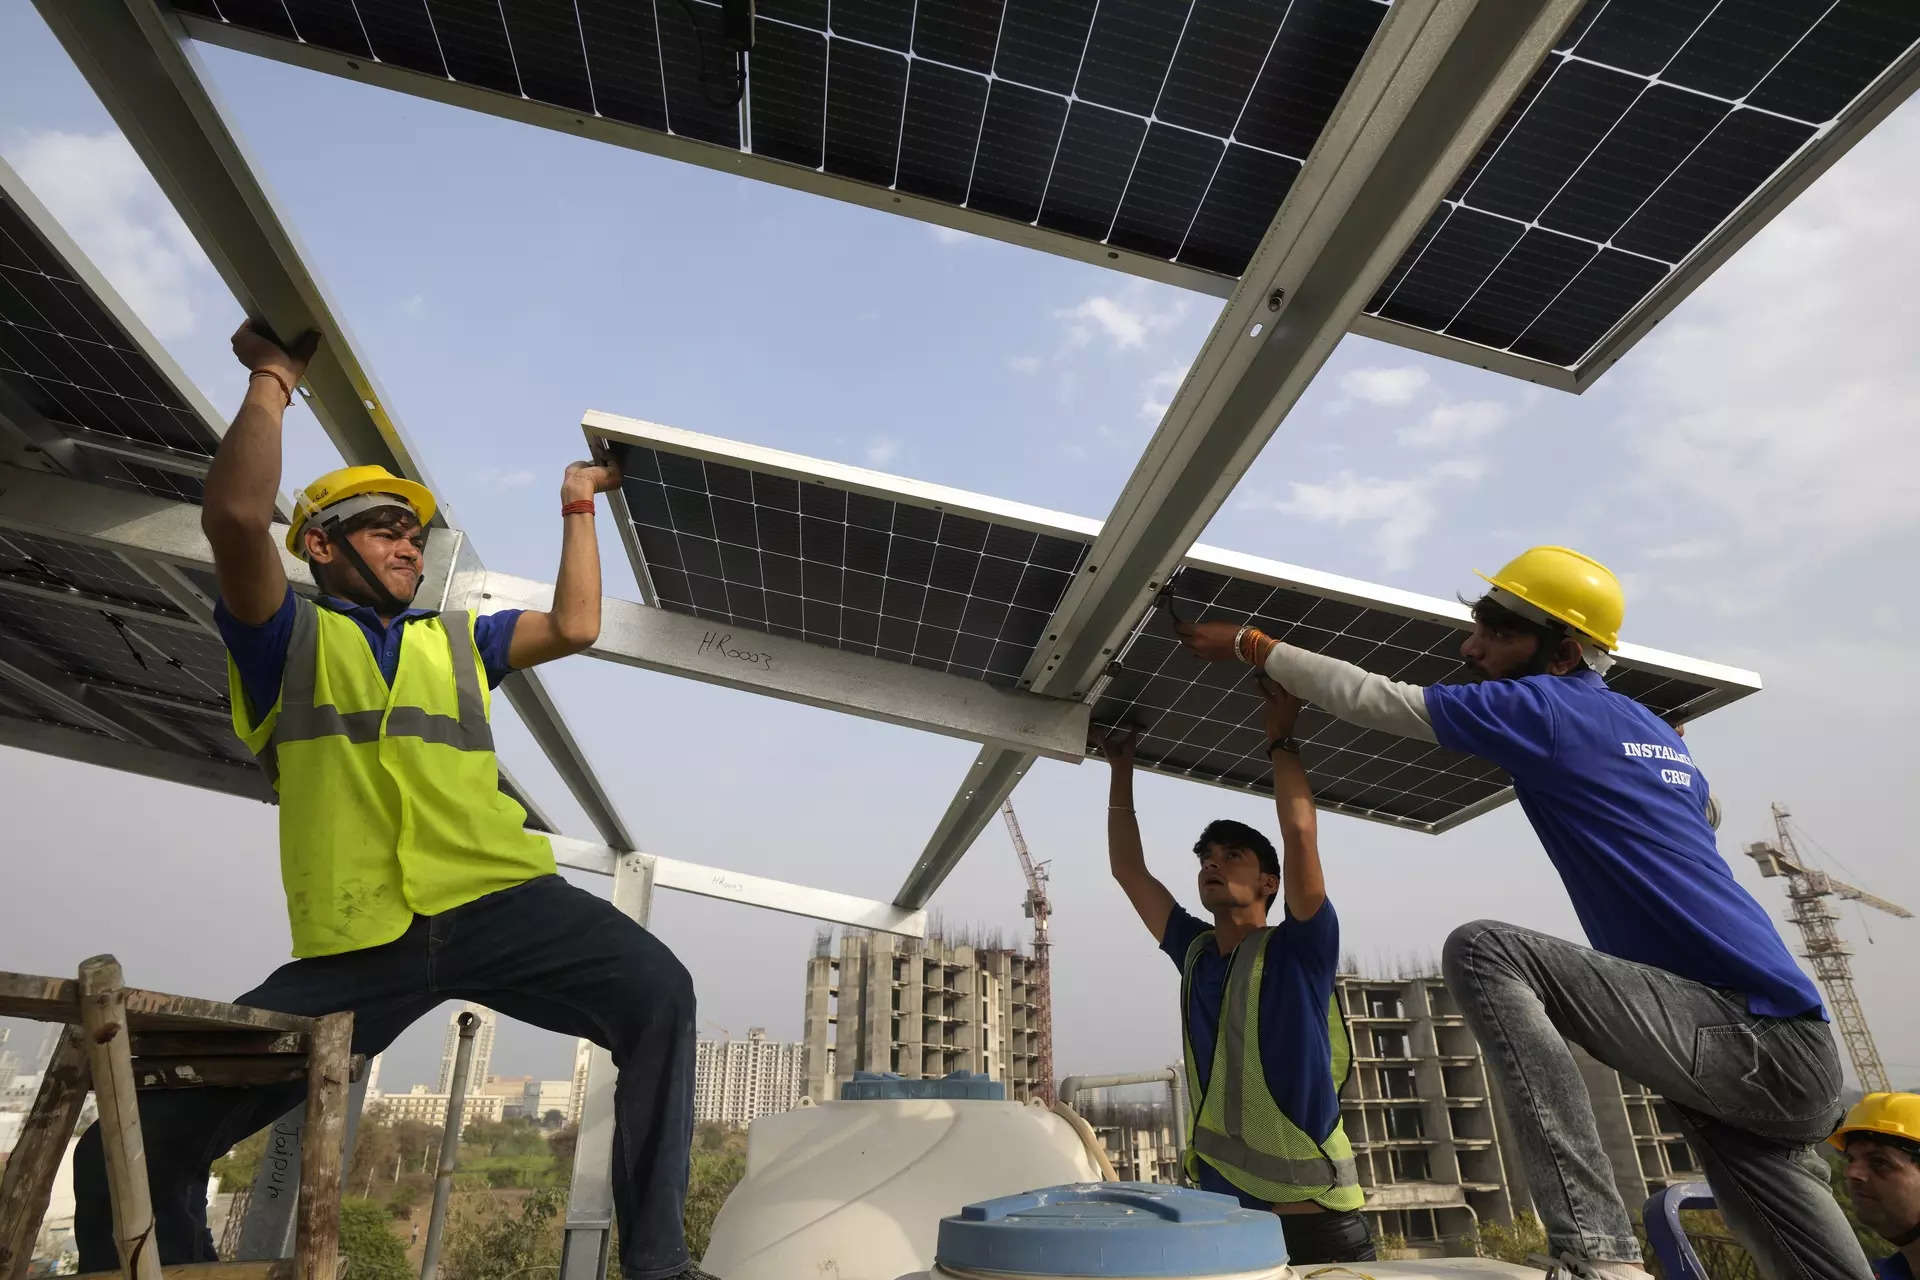 Rooftop solar scheme to benefit 10 million households, Cabinet sanctions ₹75,021 crore, ET EnergyWorld